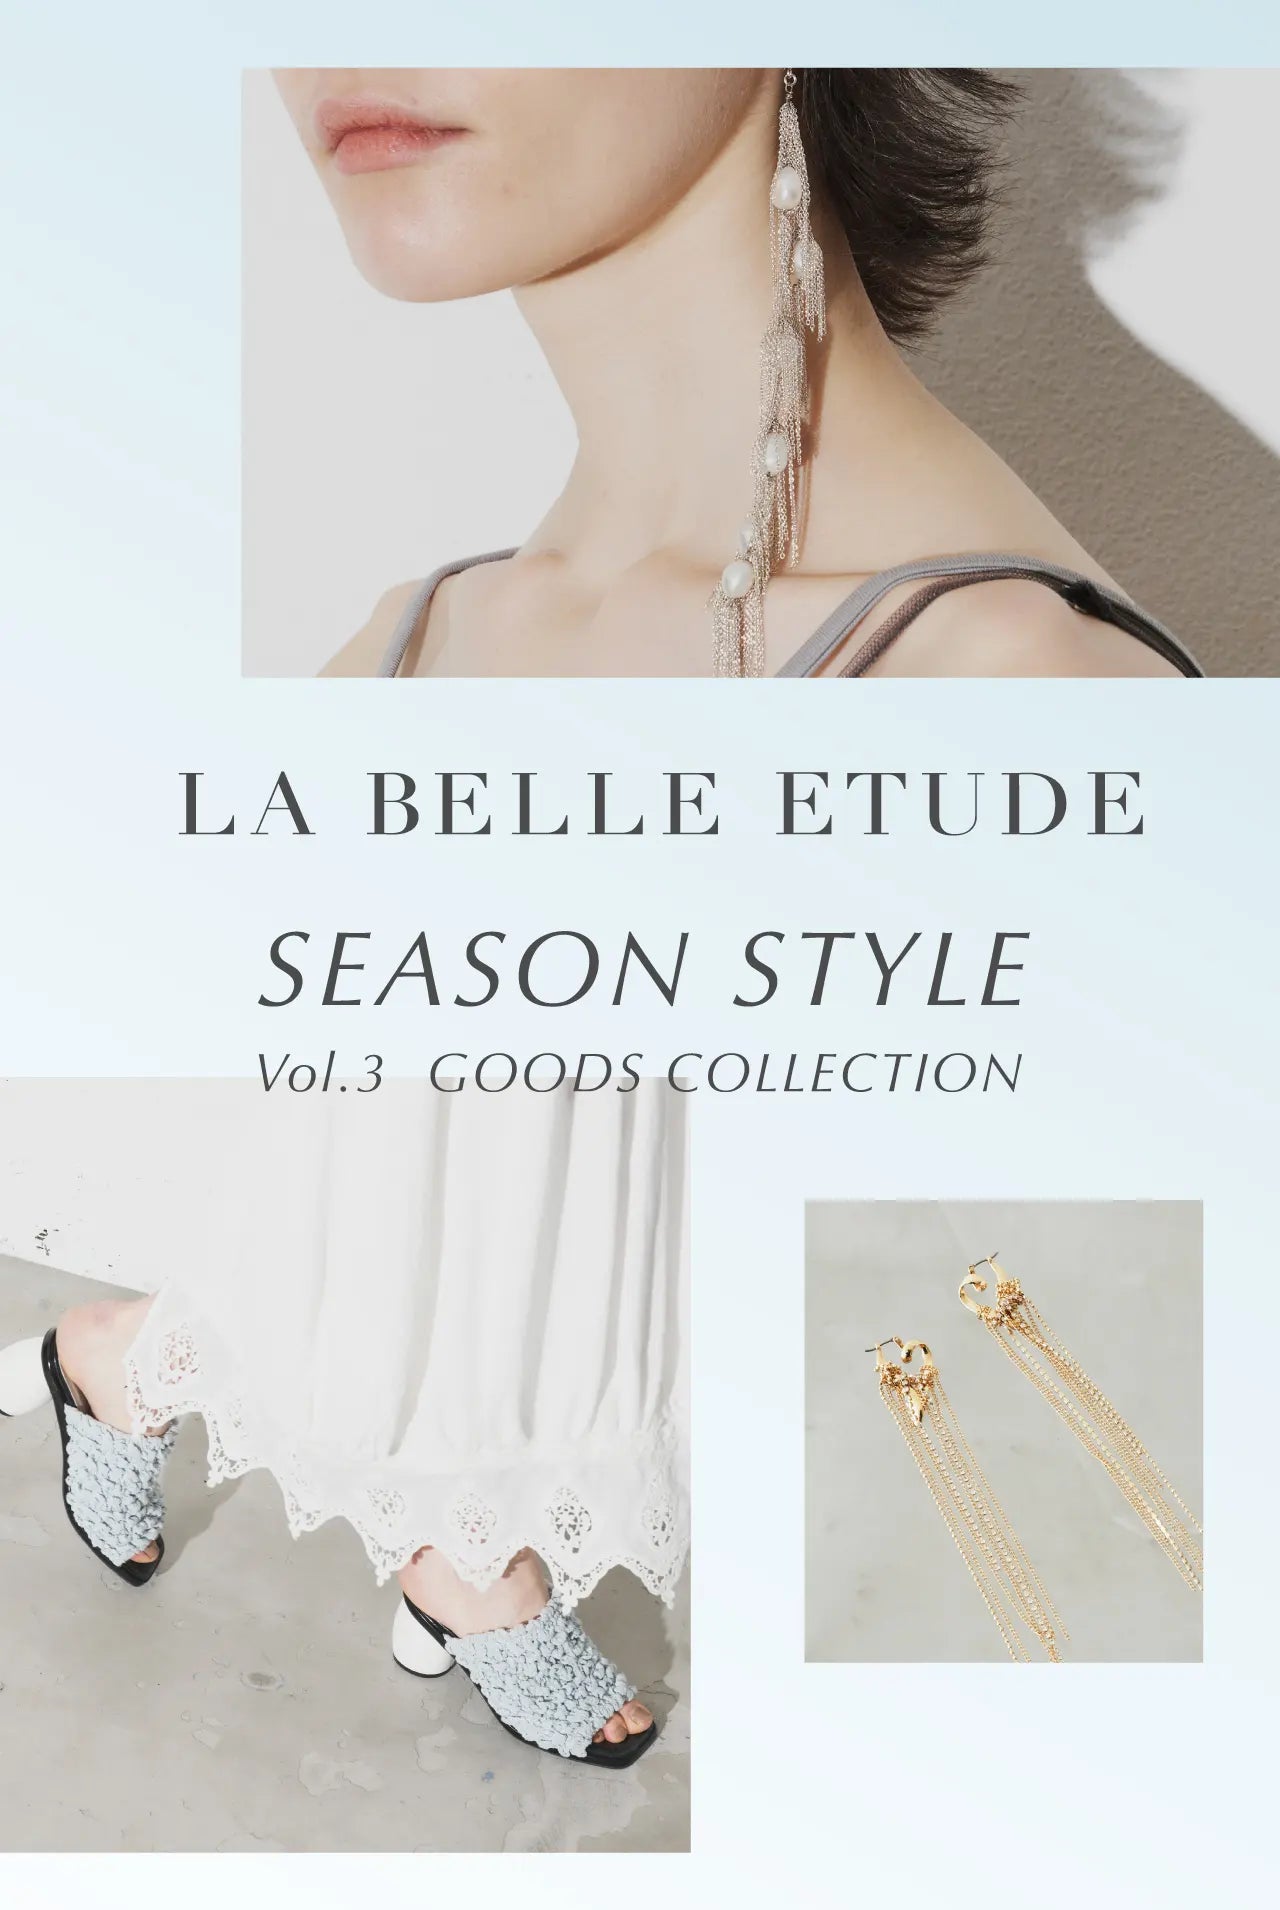 LA BELLE ETUDE SEASON STYLE Vol.3 GOODS COLLECTION